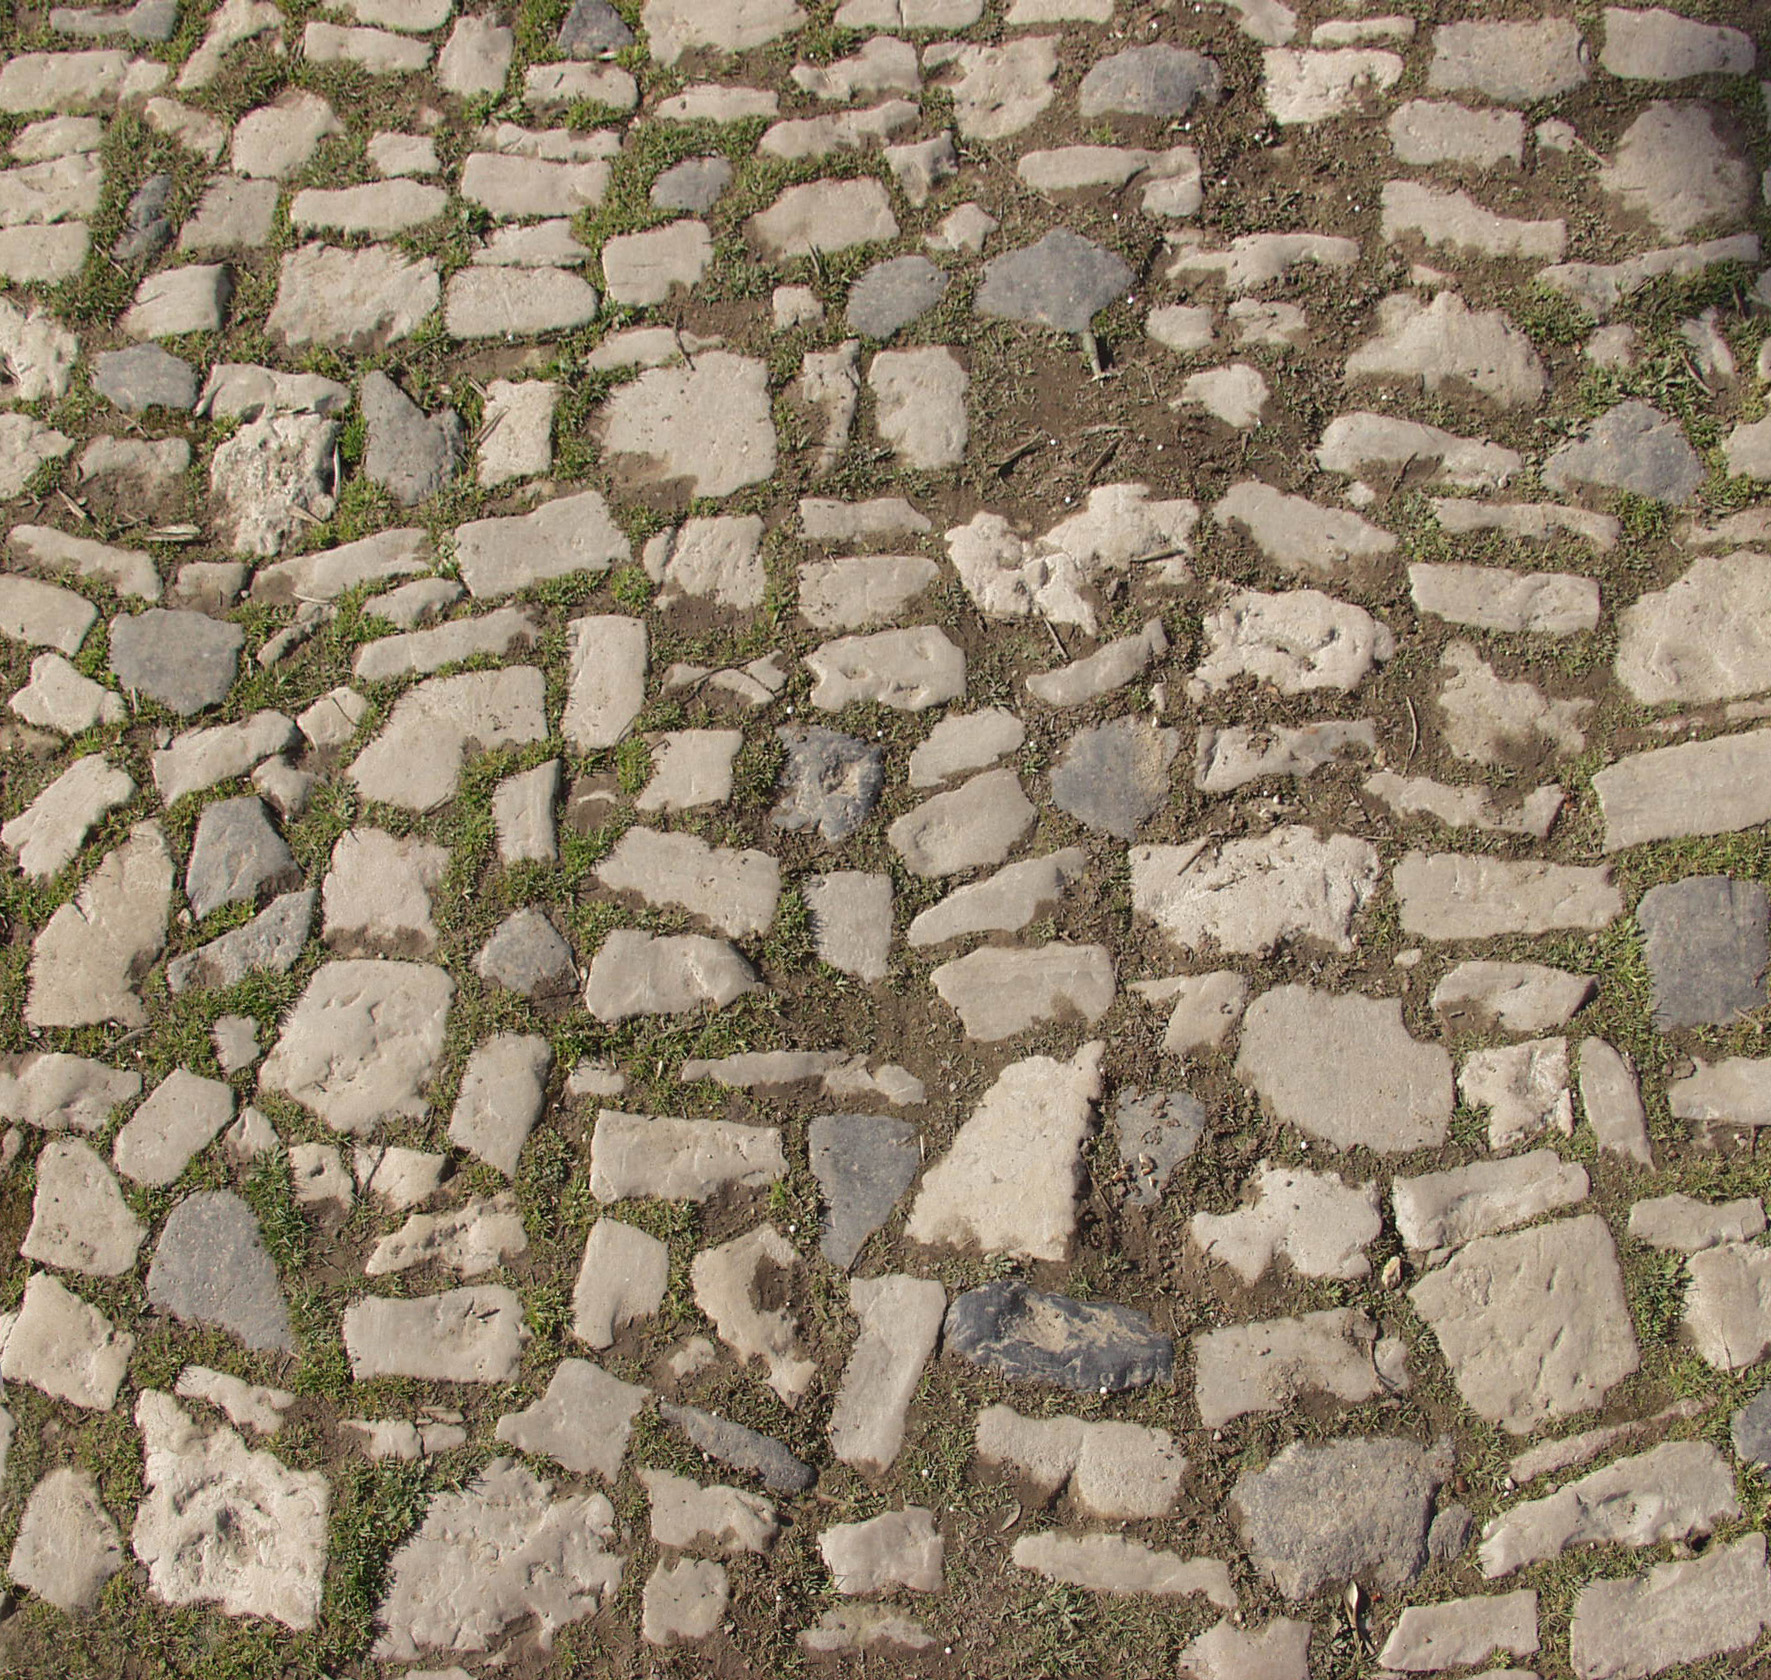 stone floor texture free image, stones